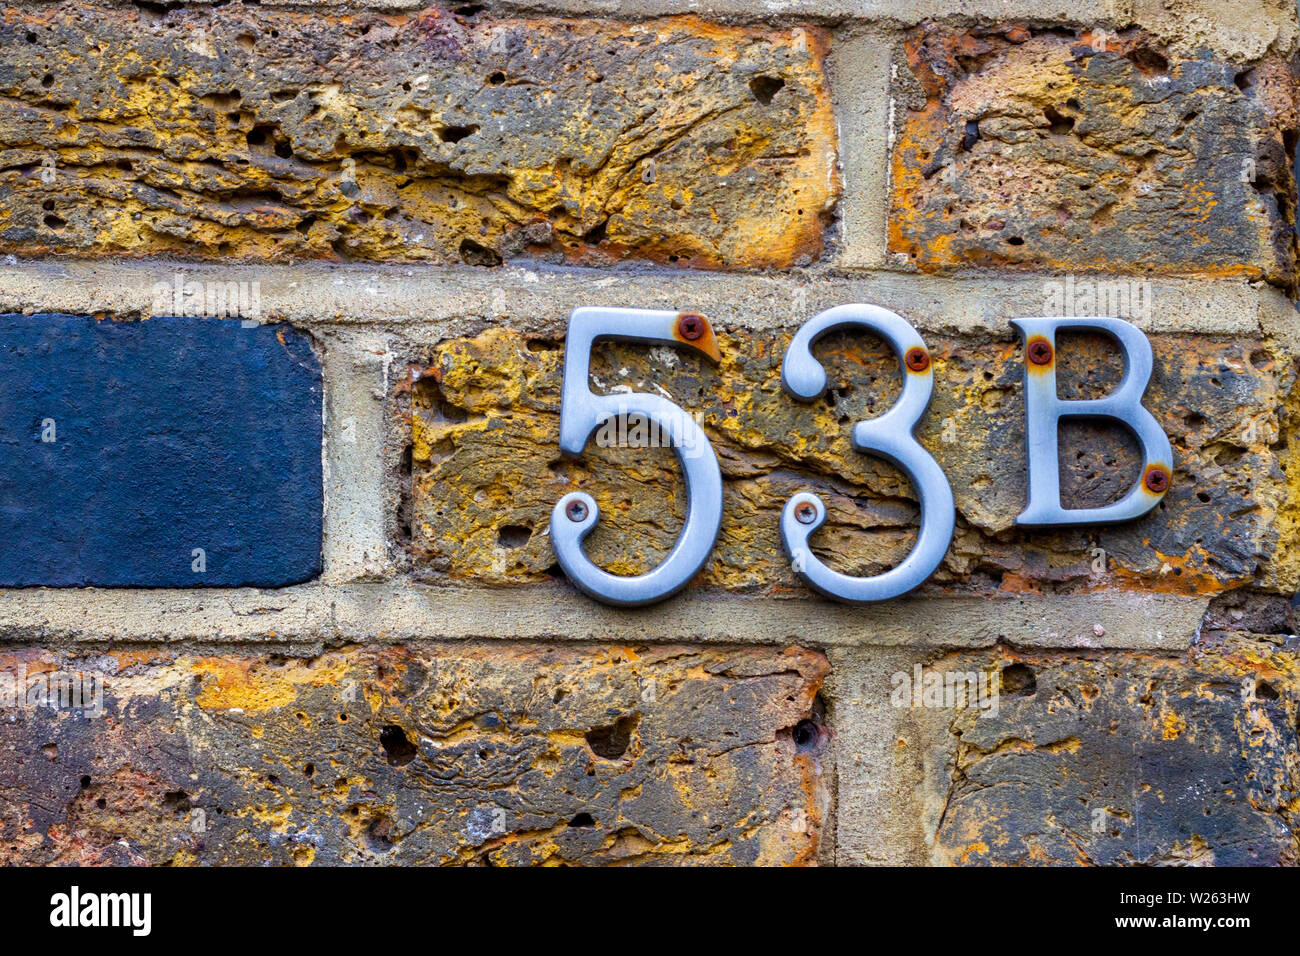 Haus Nummer 53 b mit der 53b in Metall Ziffern auf einer hölzernen Tür Stockfoto